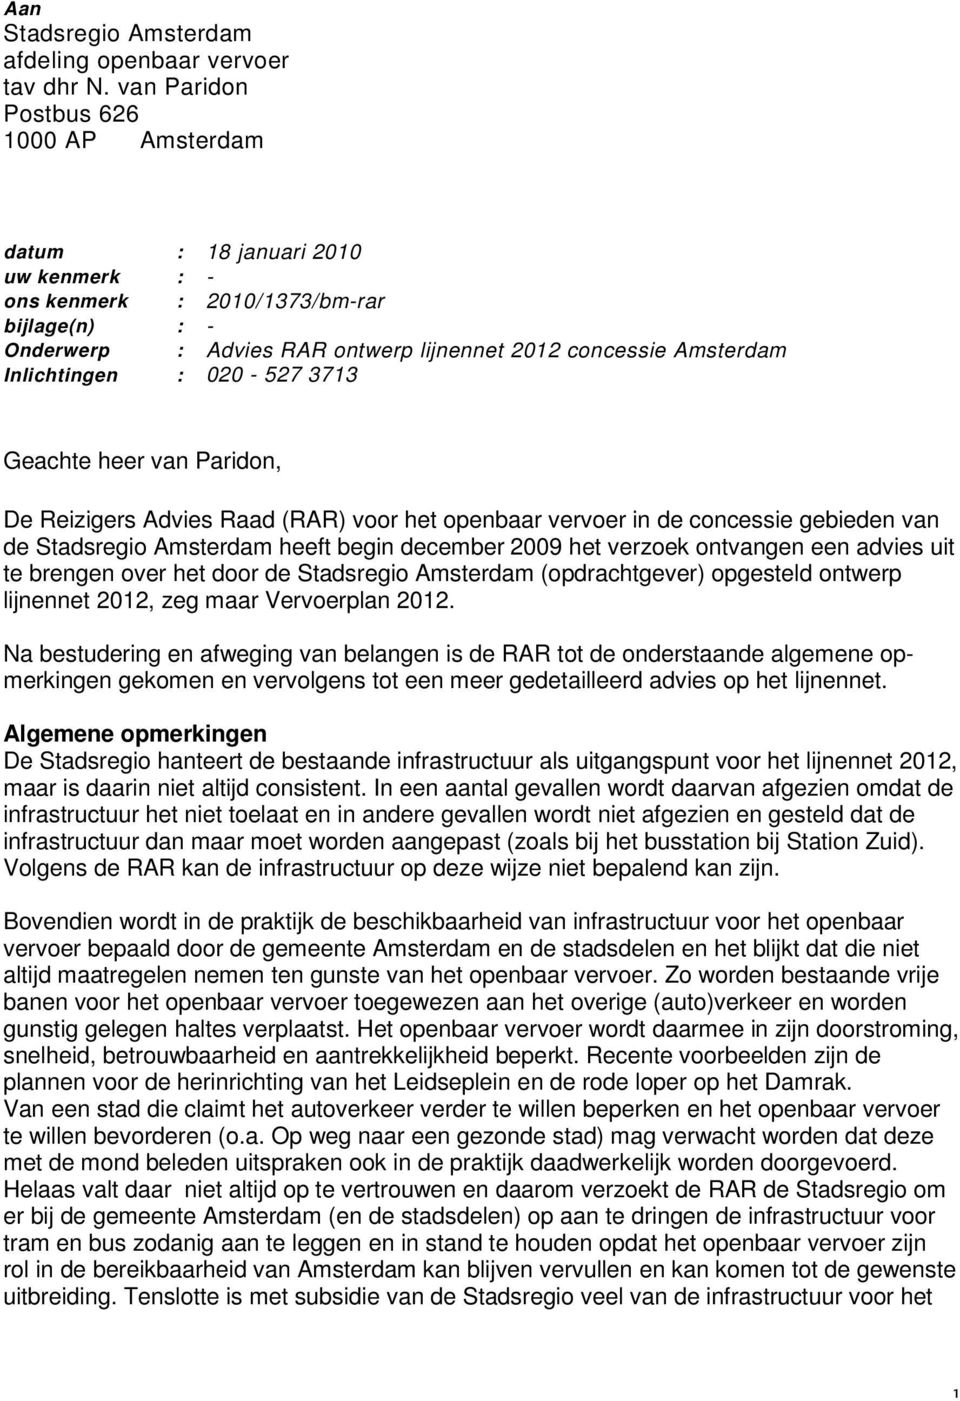 Inlichtingen : 020-527 3713 Geachte heer van Paridon, De Reizigers Advies Raad (RAR) voor het openbaar vervoer in de concessie gebieden van de Stadsregio Amsterdam heeft begin december 2009 het